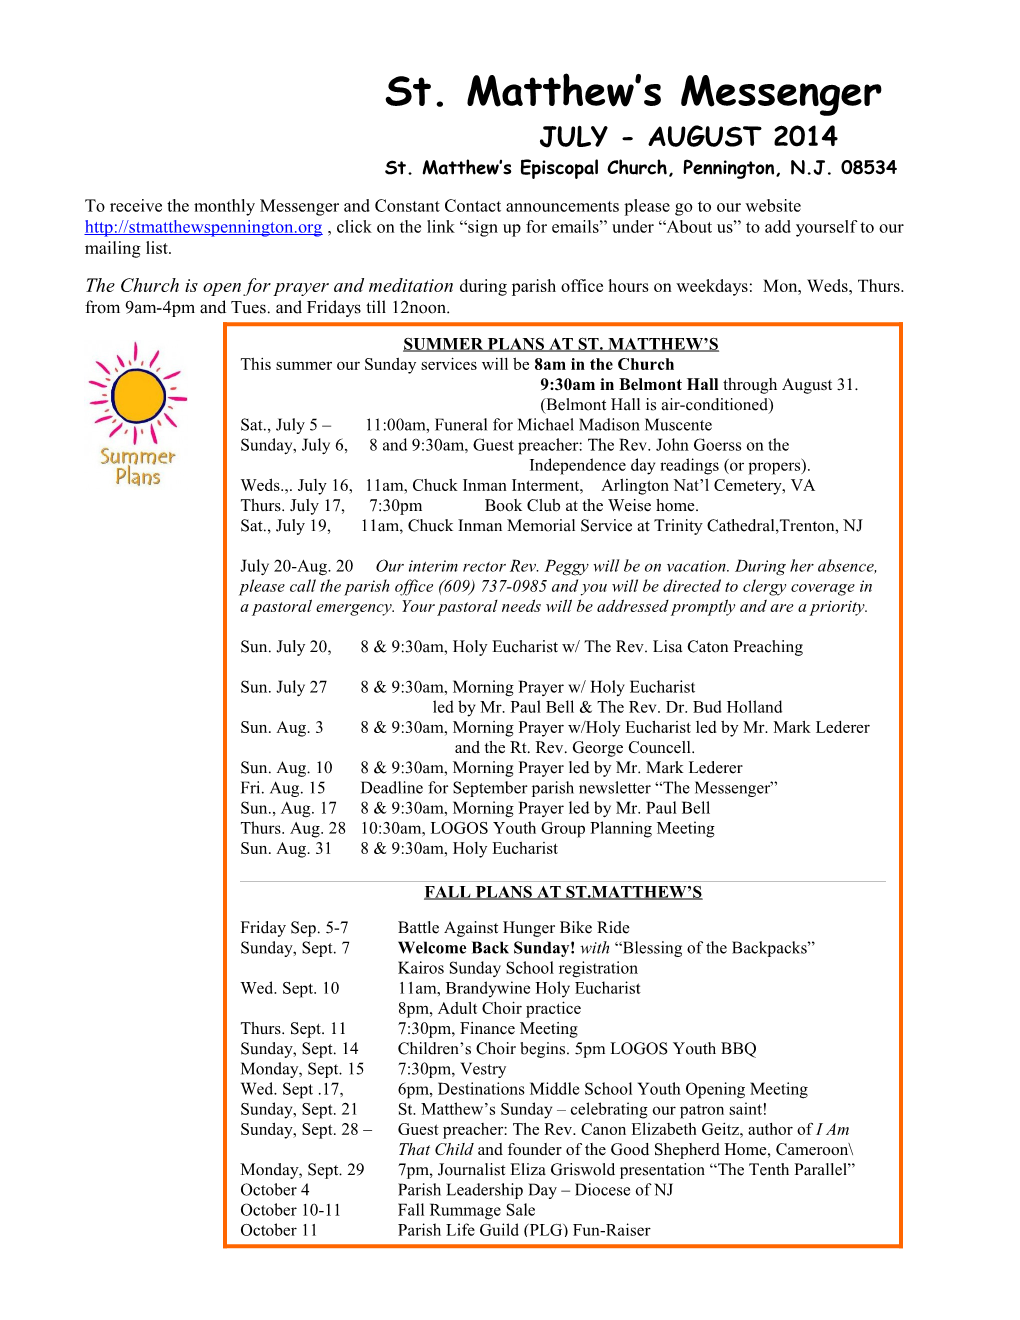 Sunday Summer Service Schedule